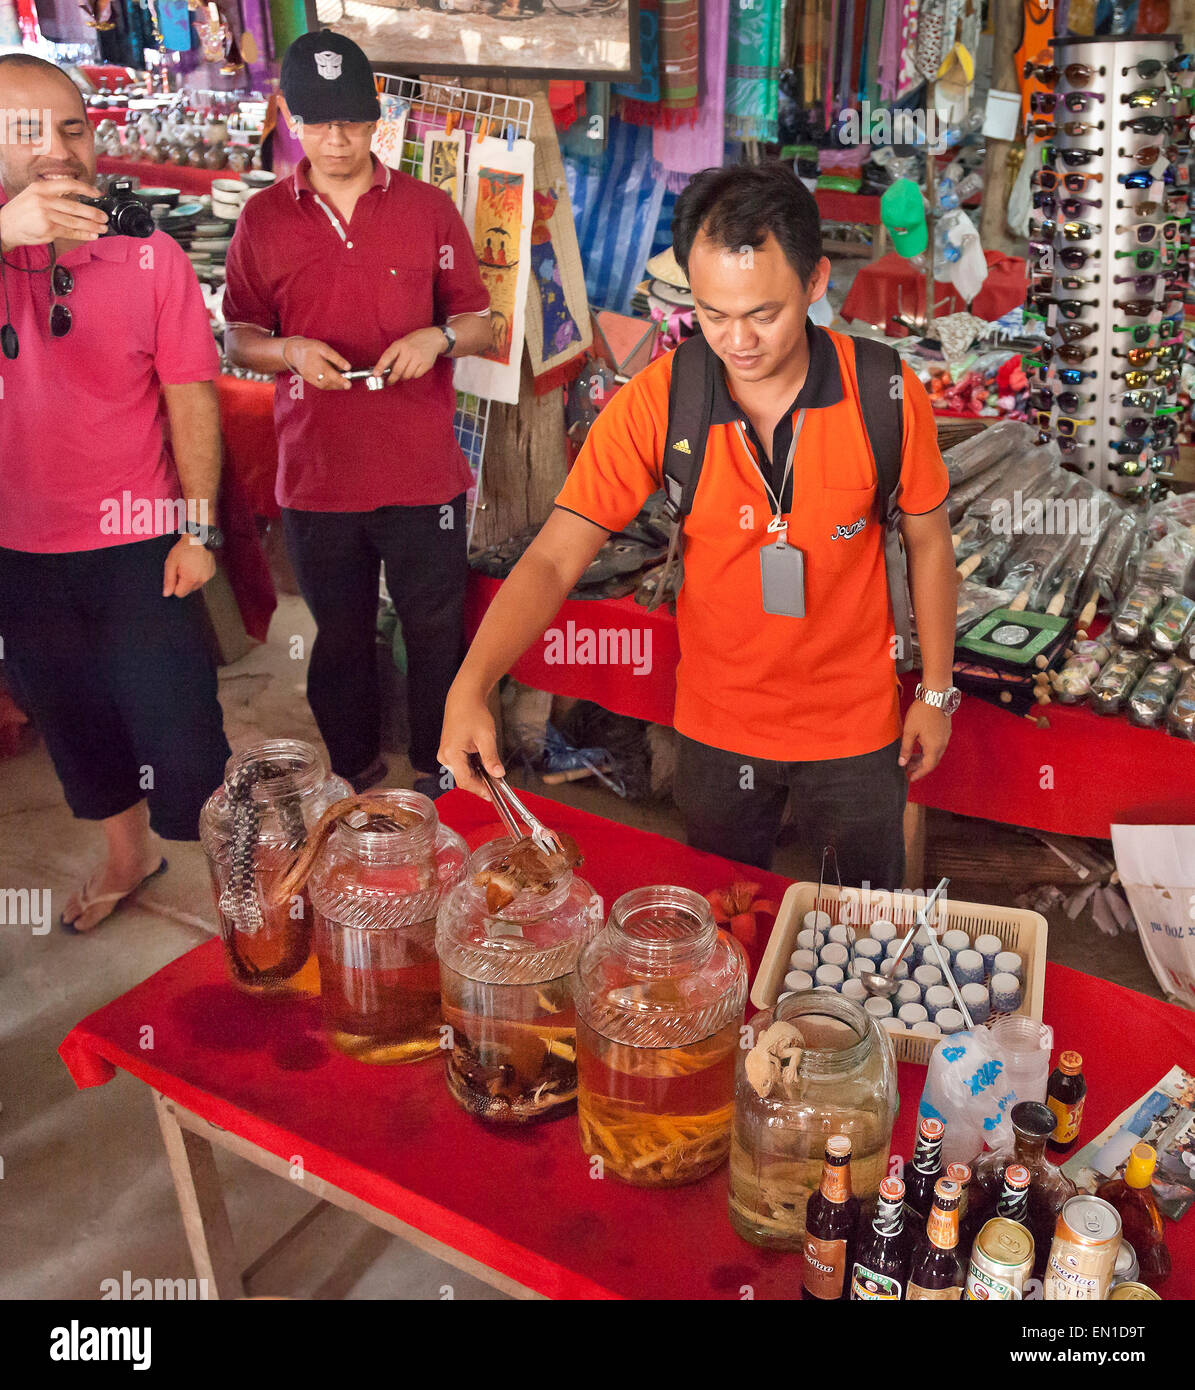 Insel Don Sao, Laos, das goldene Dreieck, Marktstand verkaufen exotische Tonikum Spirituosen enthalten, Skorpion, Cobra, Eidechse Stockfoto